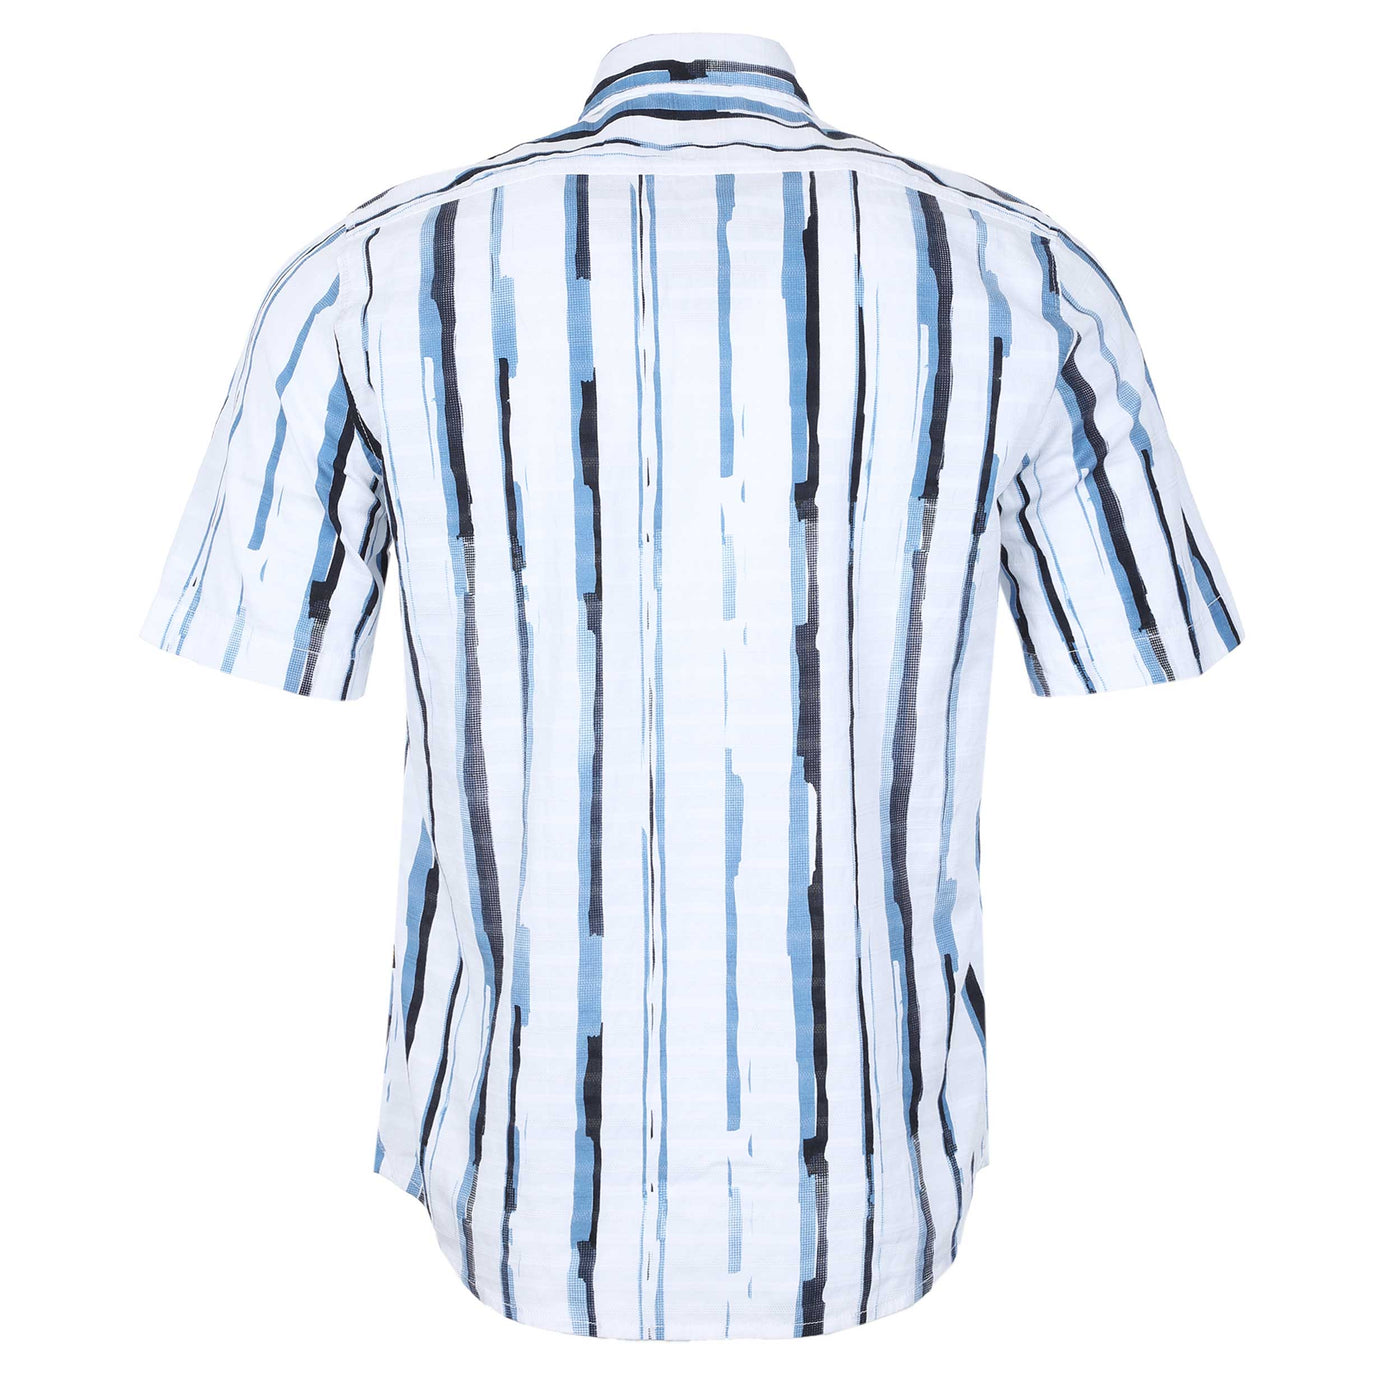 BOSS Rash 2 Short Sleeve Shirt in White & Blue Back